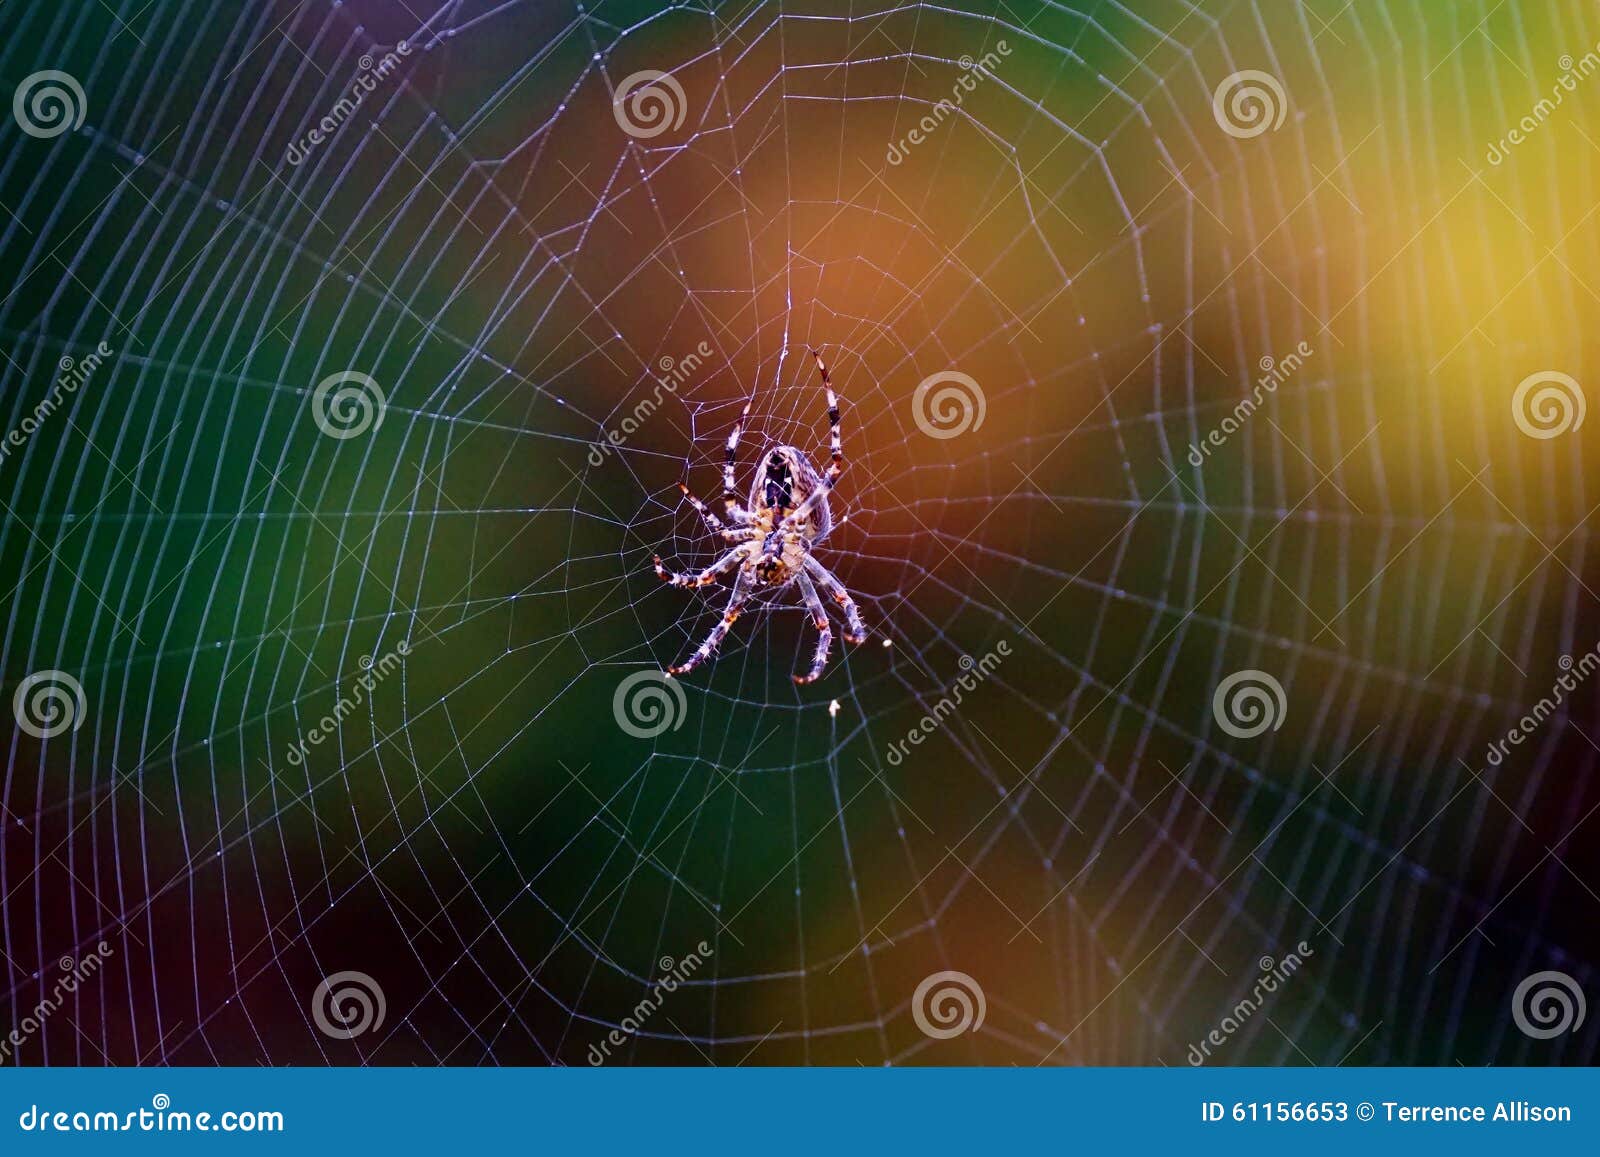 Spider Identification Chart Pacific Northwest